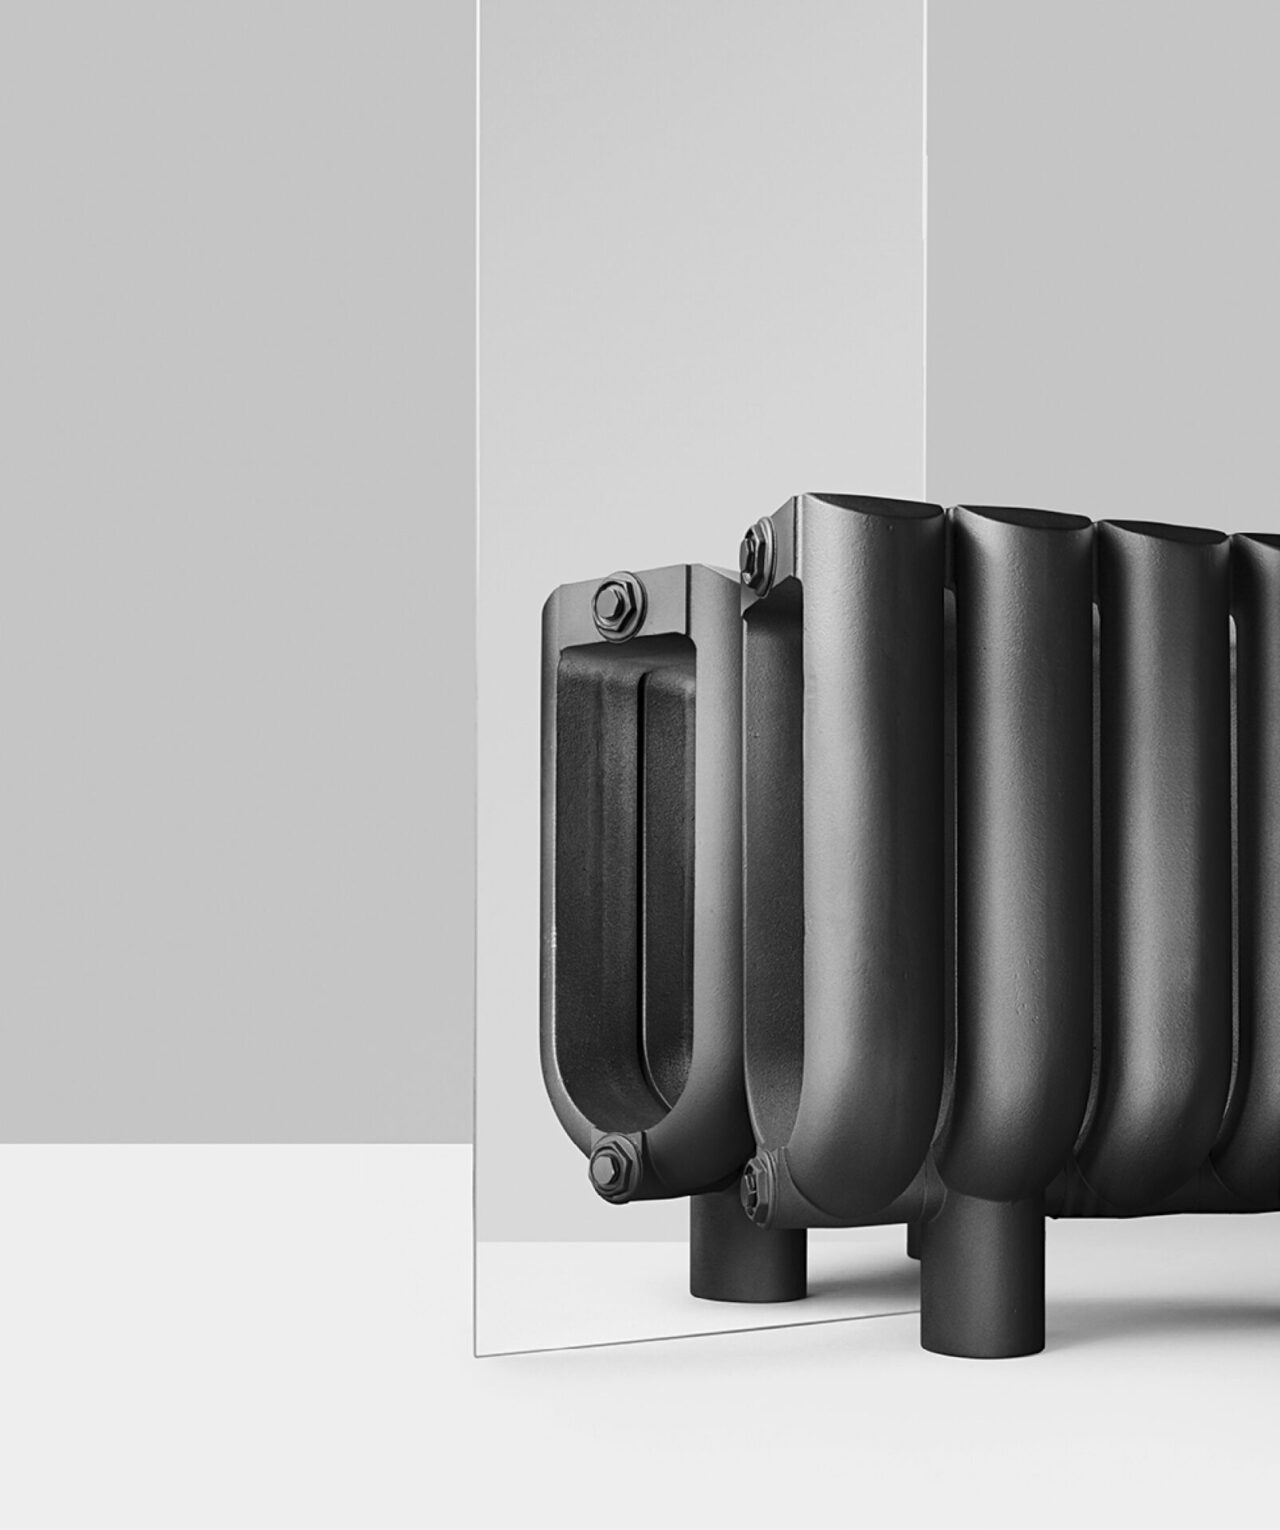 B&M : radiateur en fonte anthracite avec de larges modules arrondis. Le radiateur est sur pieds. Design Suisse Bertille Laguet. Fabrication française.